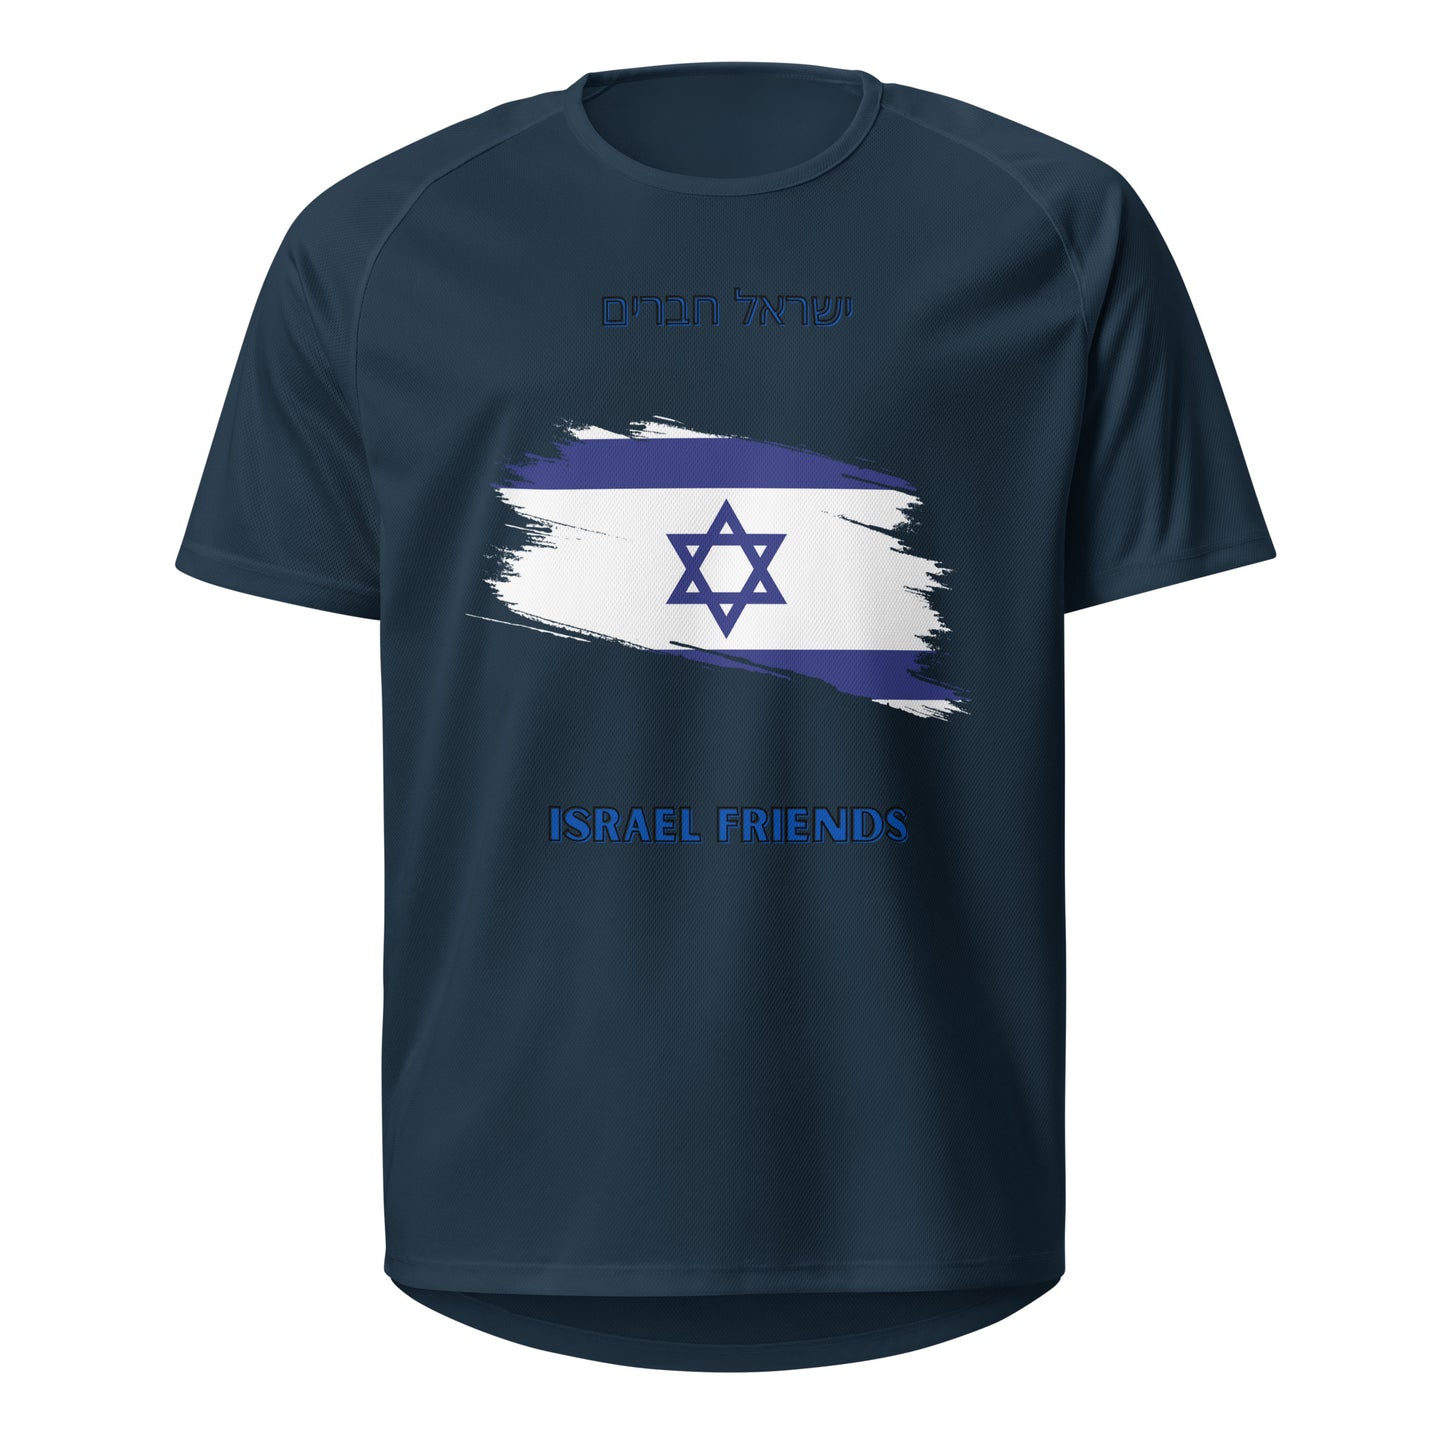 0-A-00 Israel Friends Unisex sports jersey